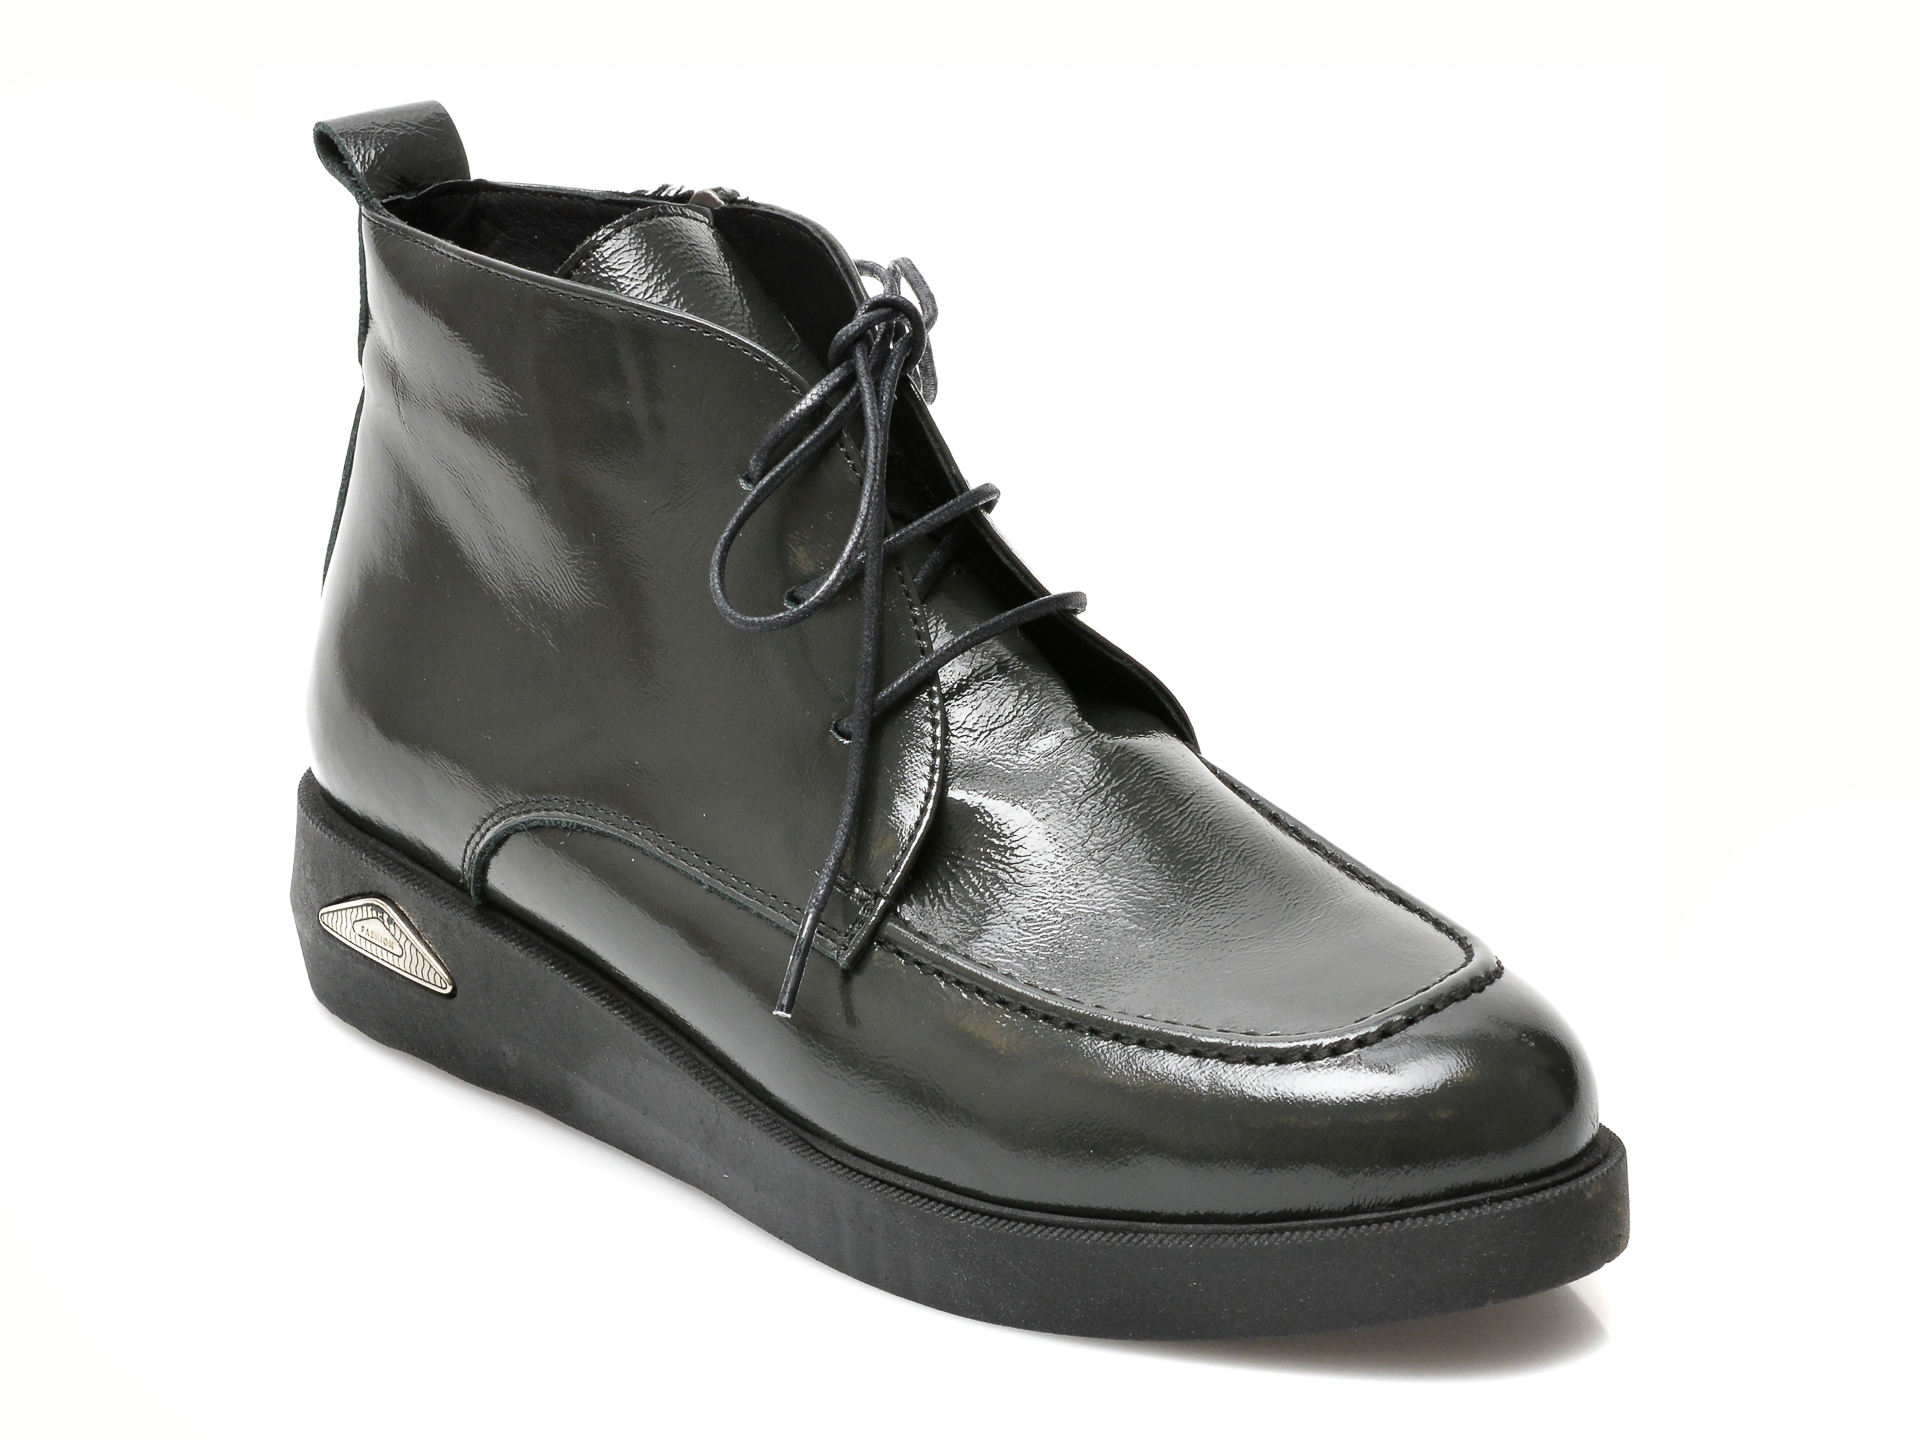 Pantofi FLAVIA PASSINI negri, 233147, din piele naturala lacuita Flavia Passini